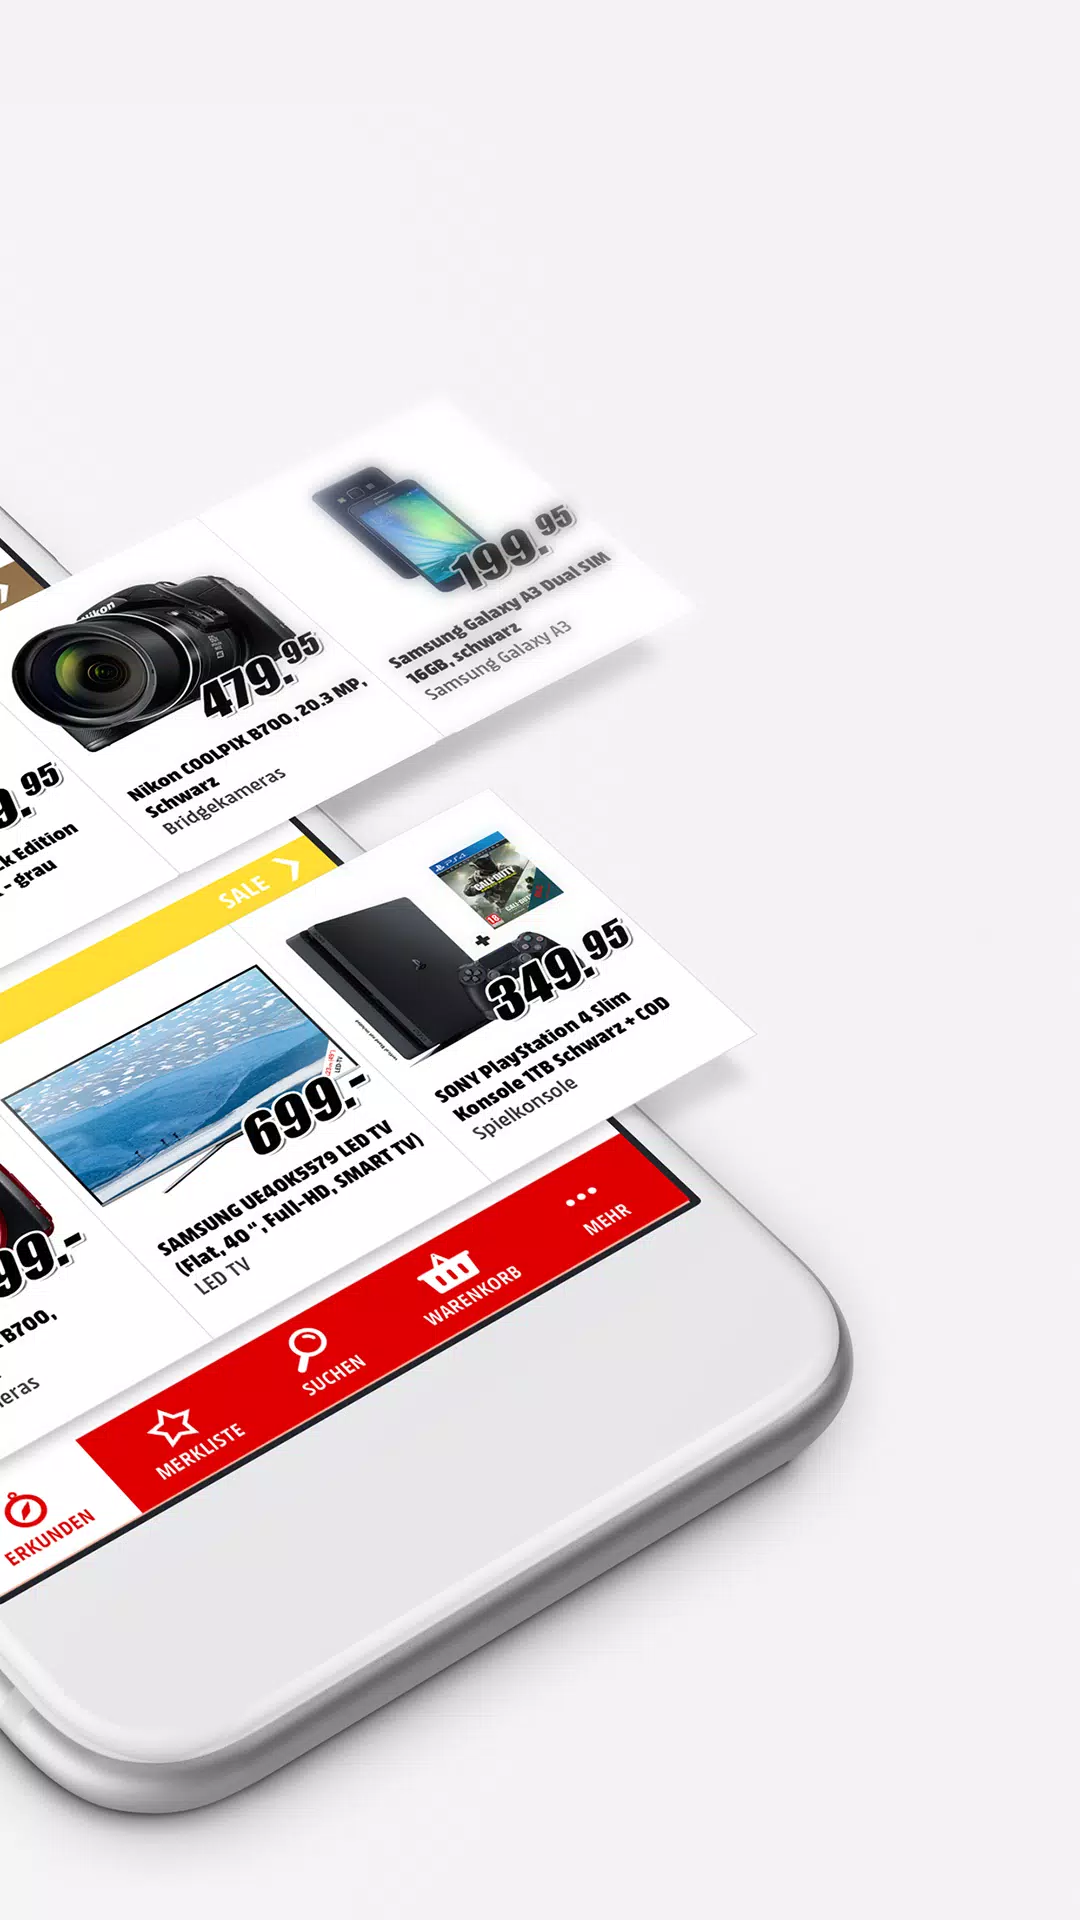 jukbeen Knipoog Op en neer gaan Media Markt Schweiz APK for Android Download